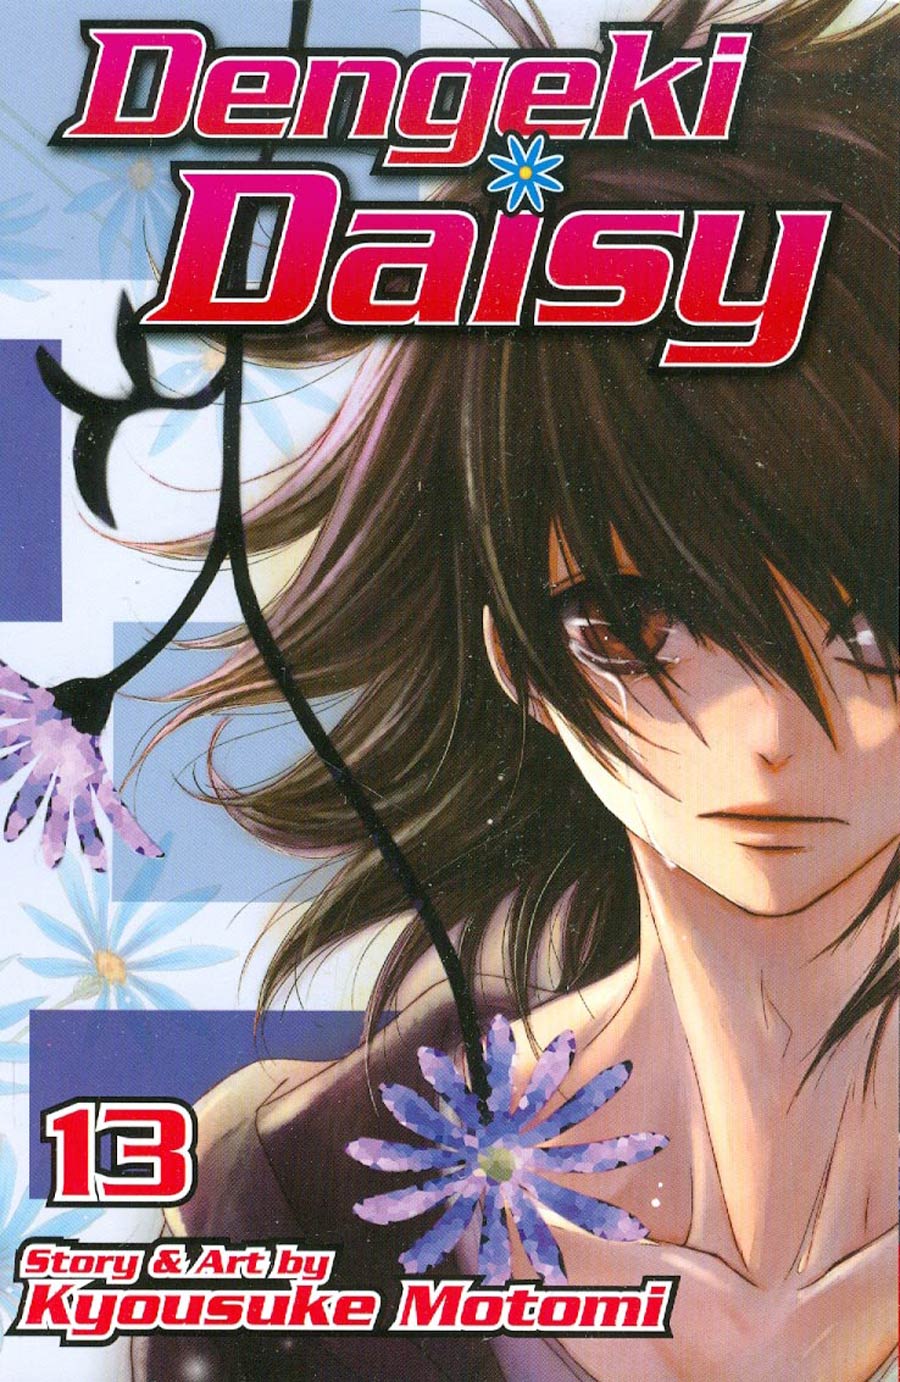 Dengeki Daisy Vol 13 TP